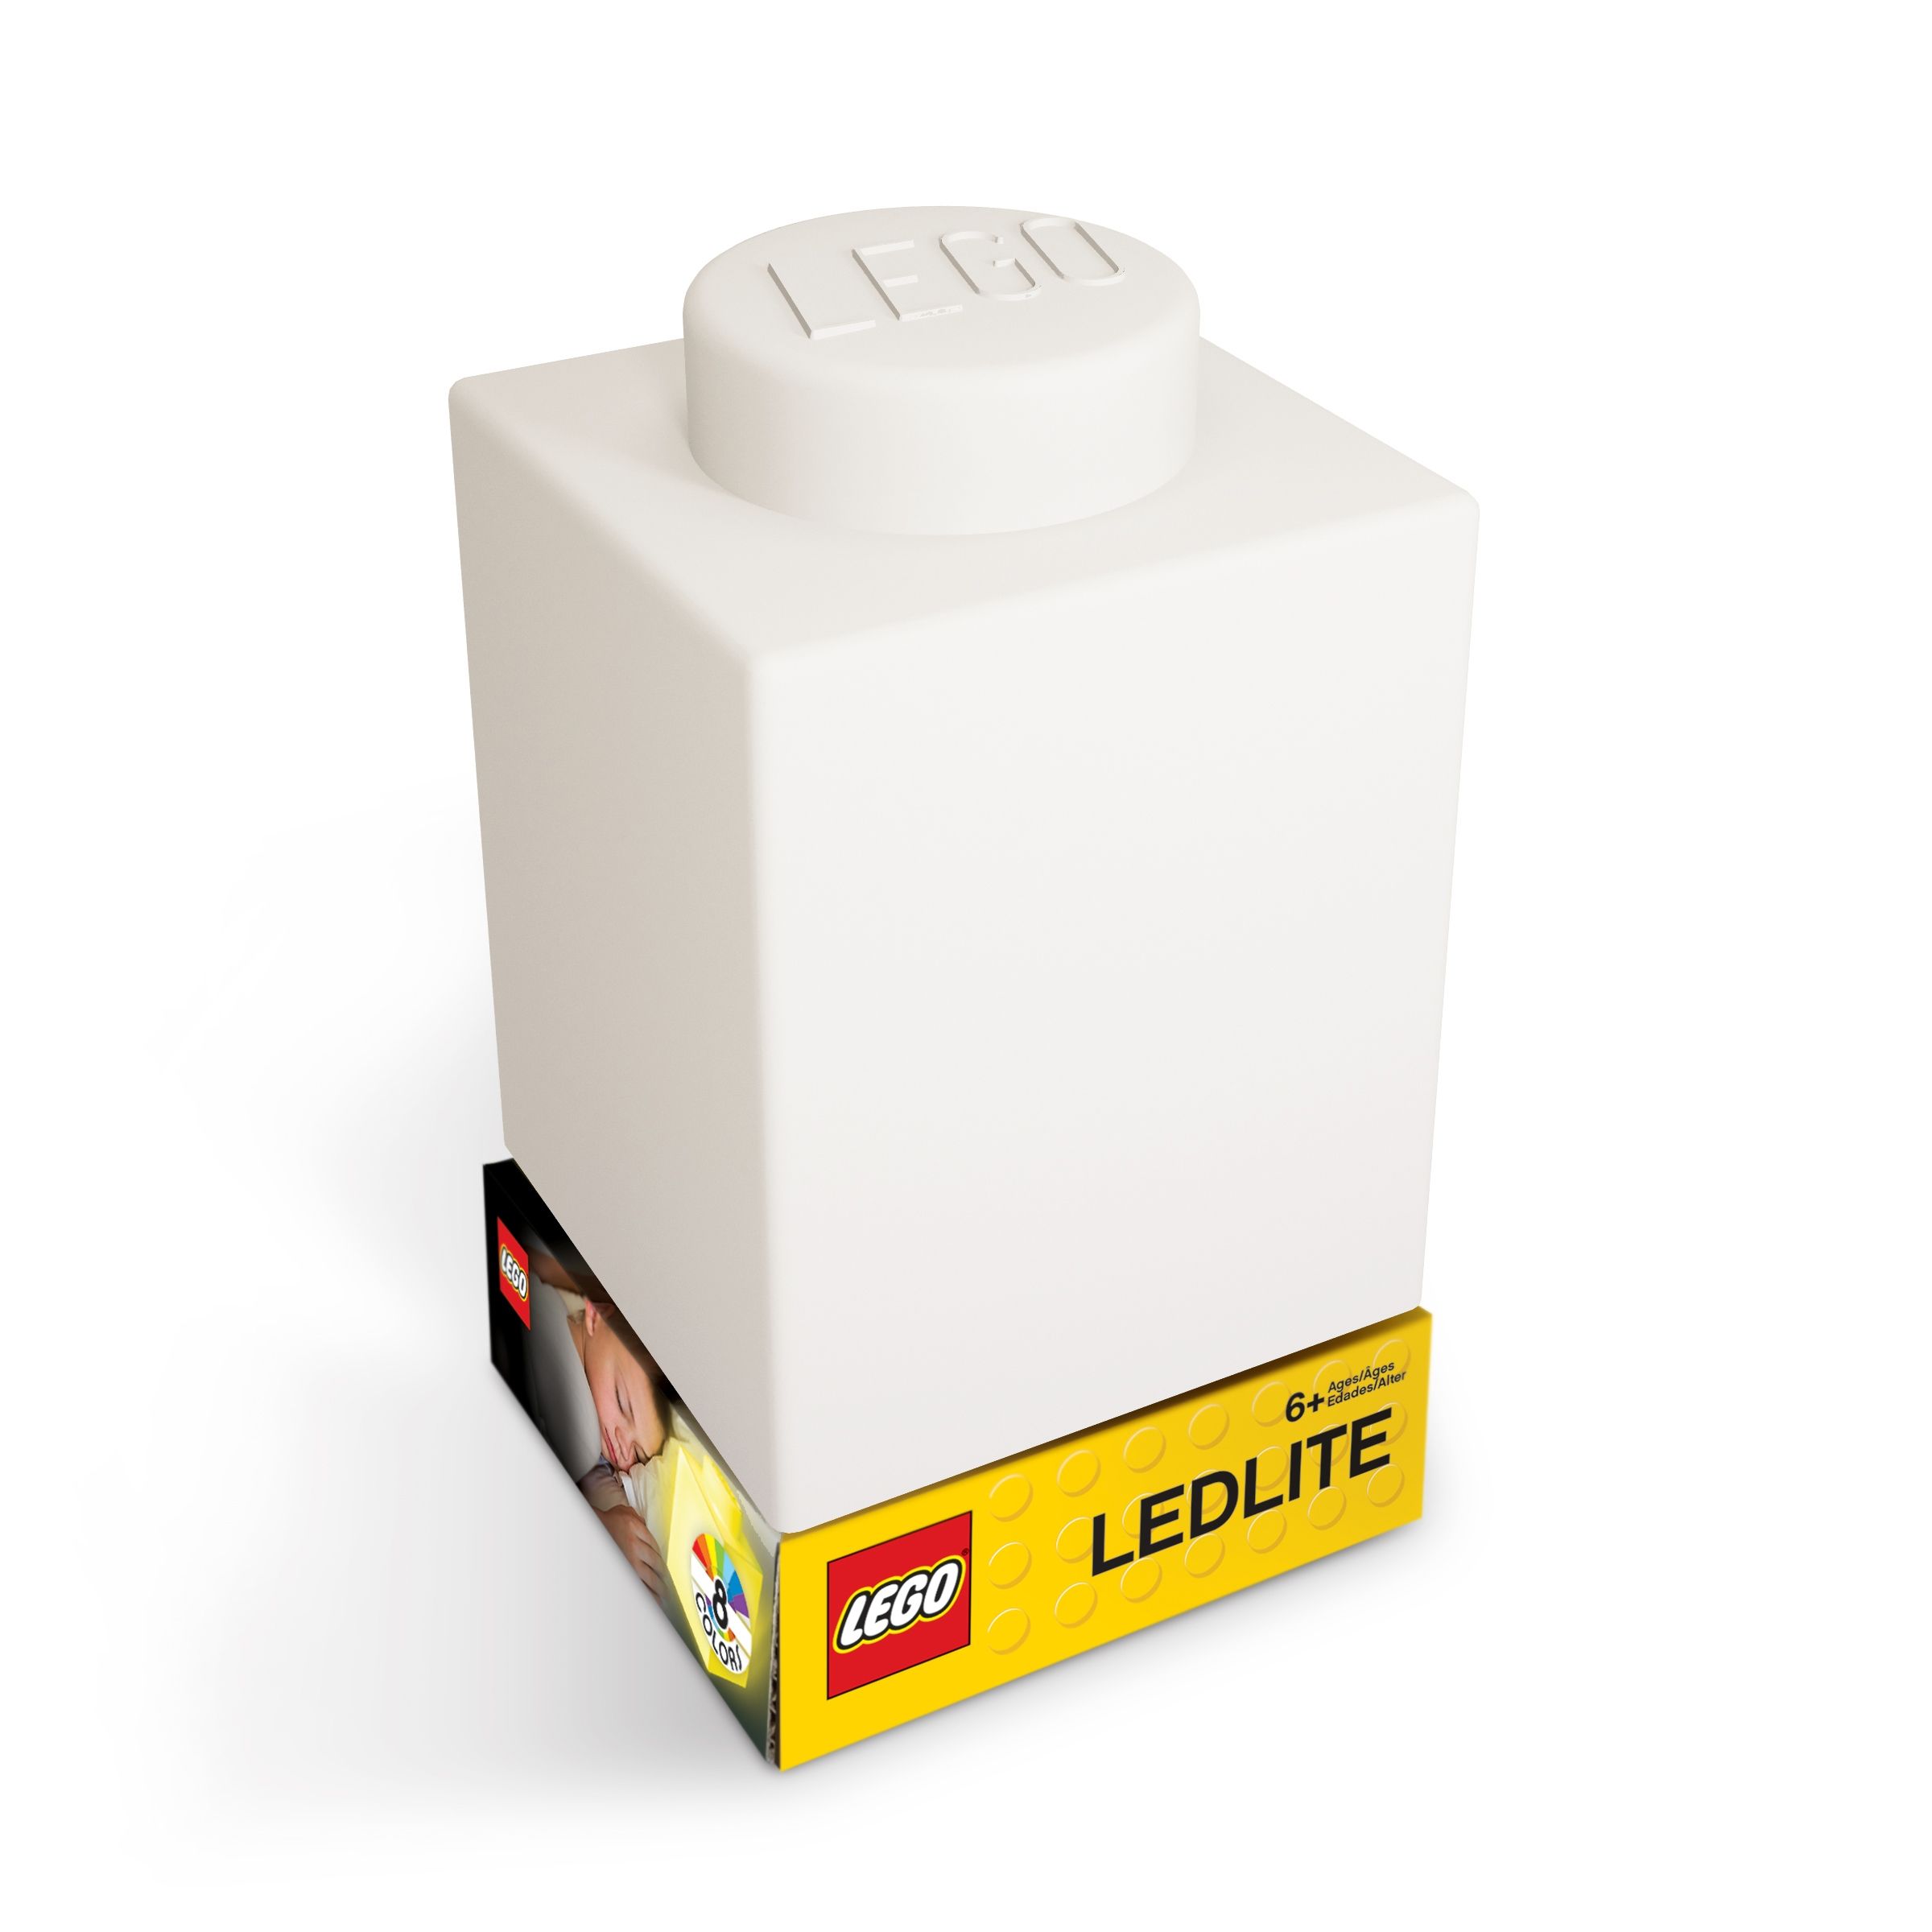 LEGO Gear 5007233 1x1 Stein-Nachtlicht – Weiß LEGO_5007233_alt1.jpg